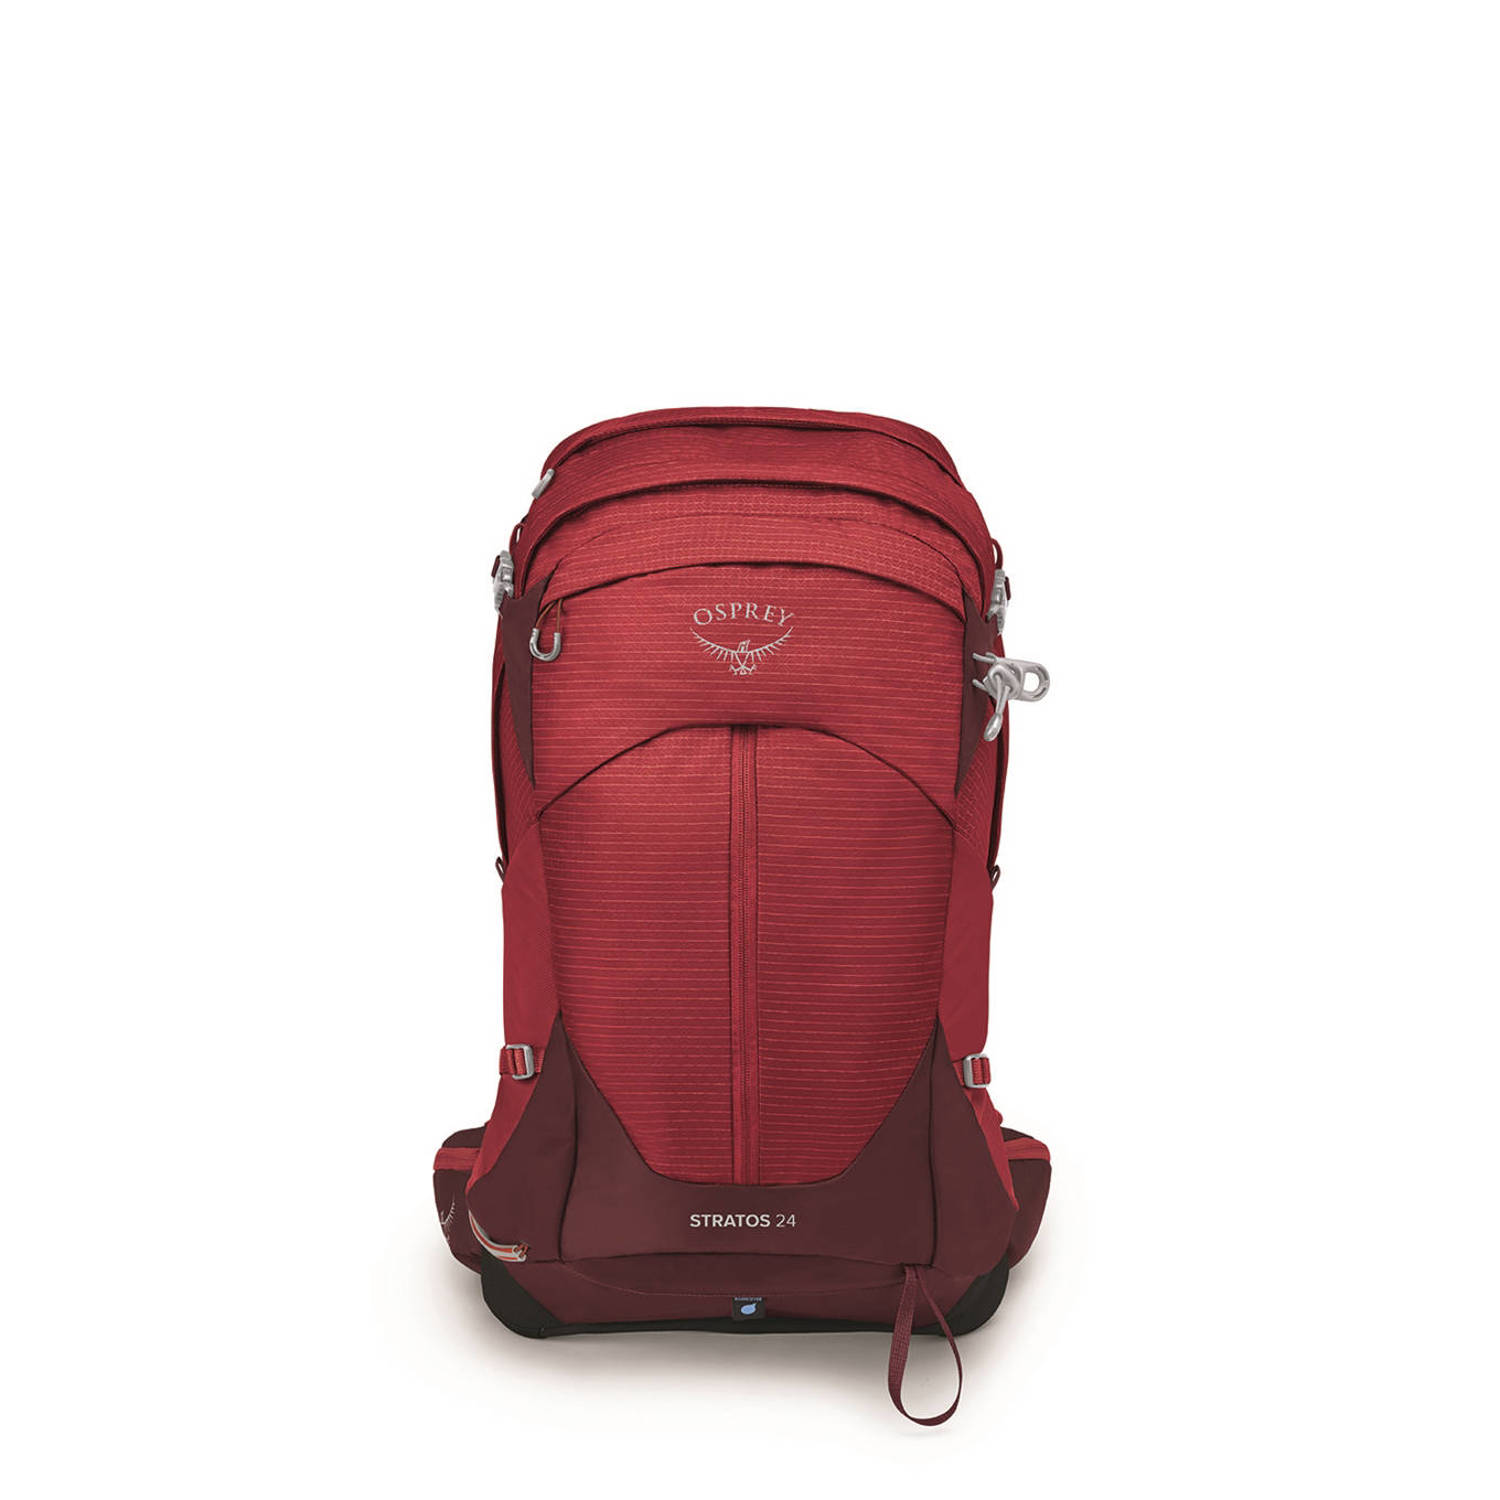 Osprey backpack Stratos 24L rood